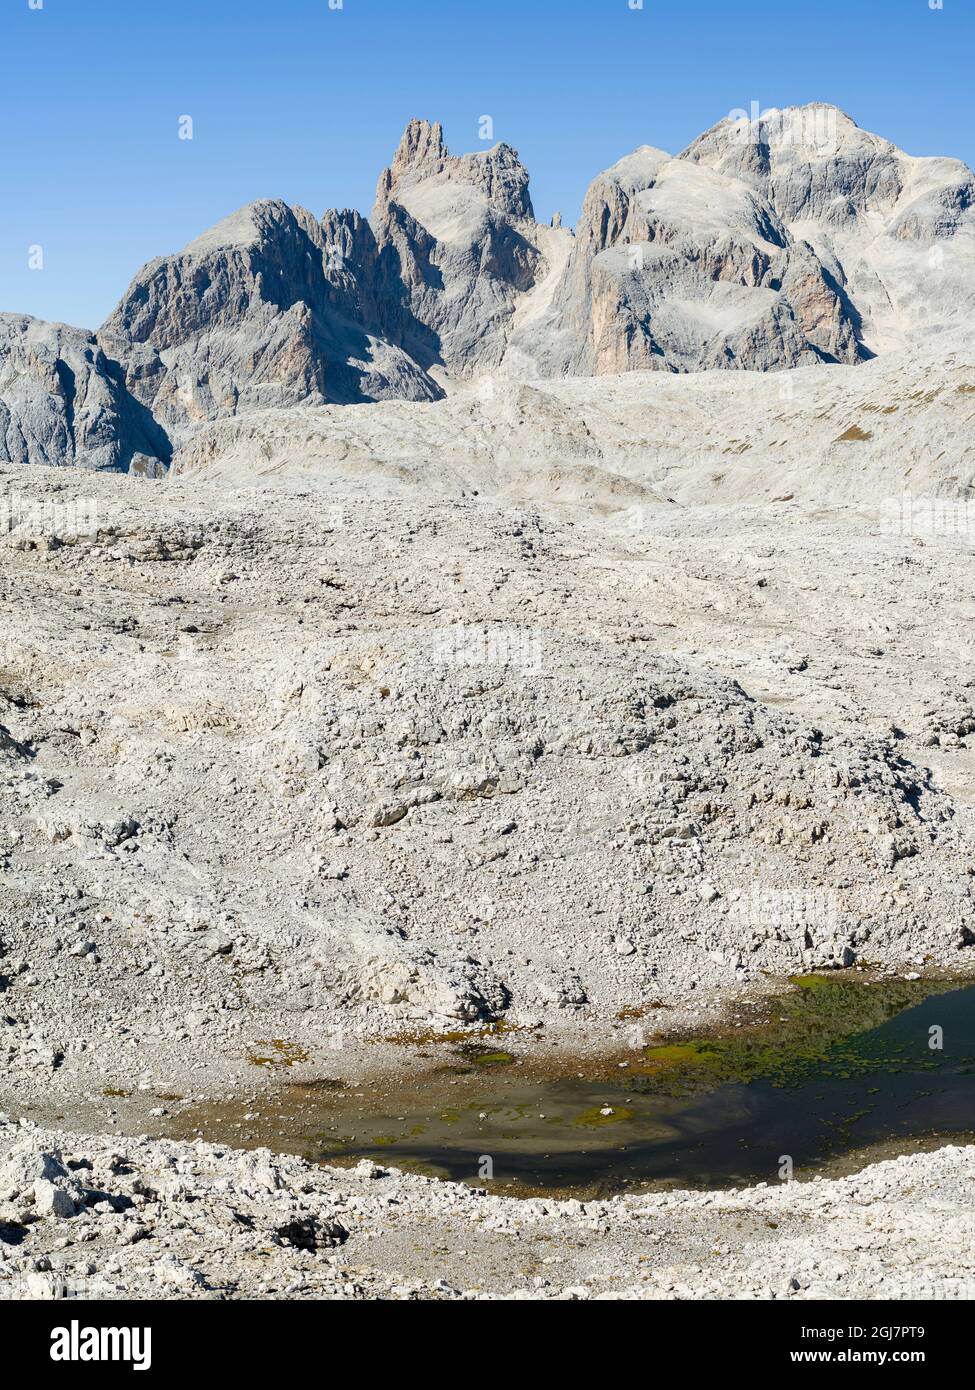 View towards Cimon della Pala, Cima della Vezzana. The alpine plateau Altiplano delle Pale di San Martino in the Pala group (UNESCO World Heritage Sit Stock Photo